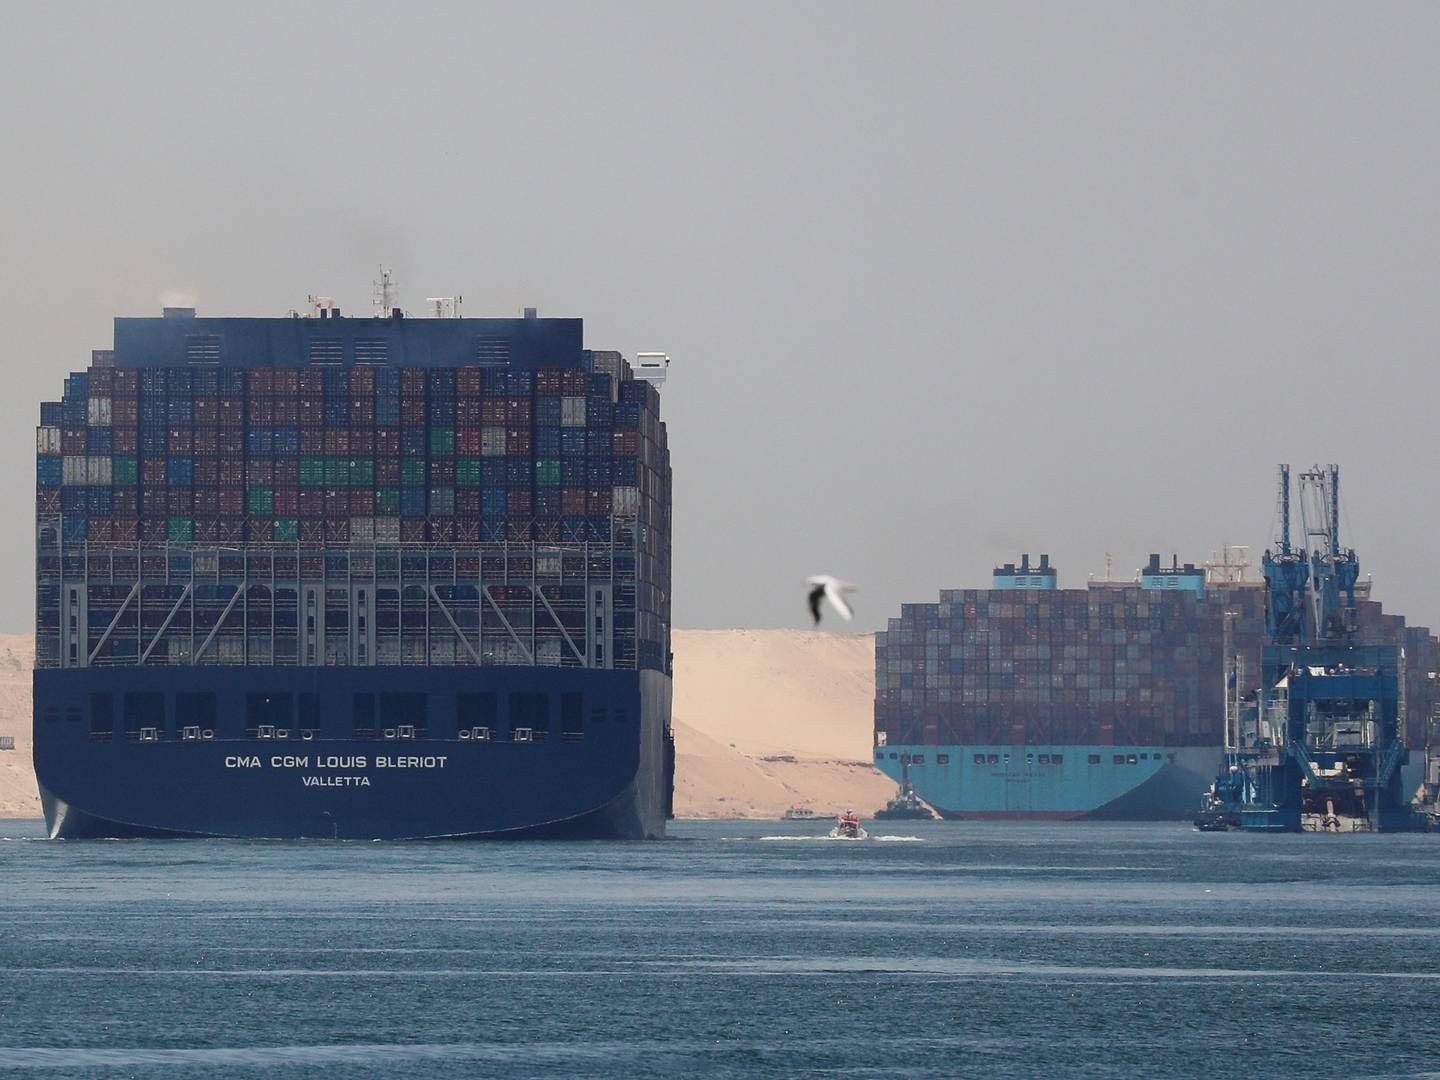 Mange rederier har været nødsaget til at sende sine skibe væk fra Det Røde Hav og Suezkanalen efter gentagne angreb på skibe. Det kan give uventede udgifter til EU. | Foto: Amr Abdallah Dalsh/Reuters/Ritzau Scanpix